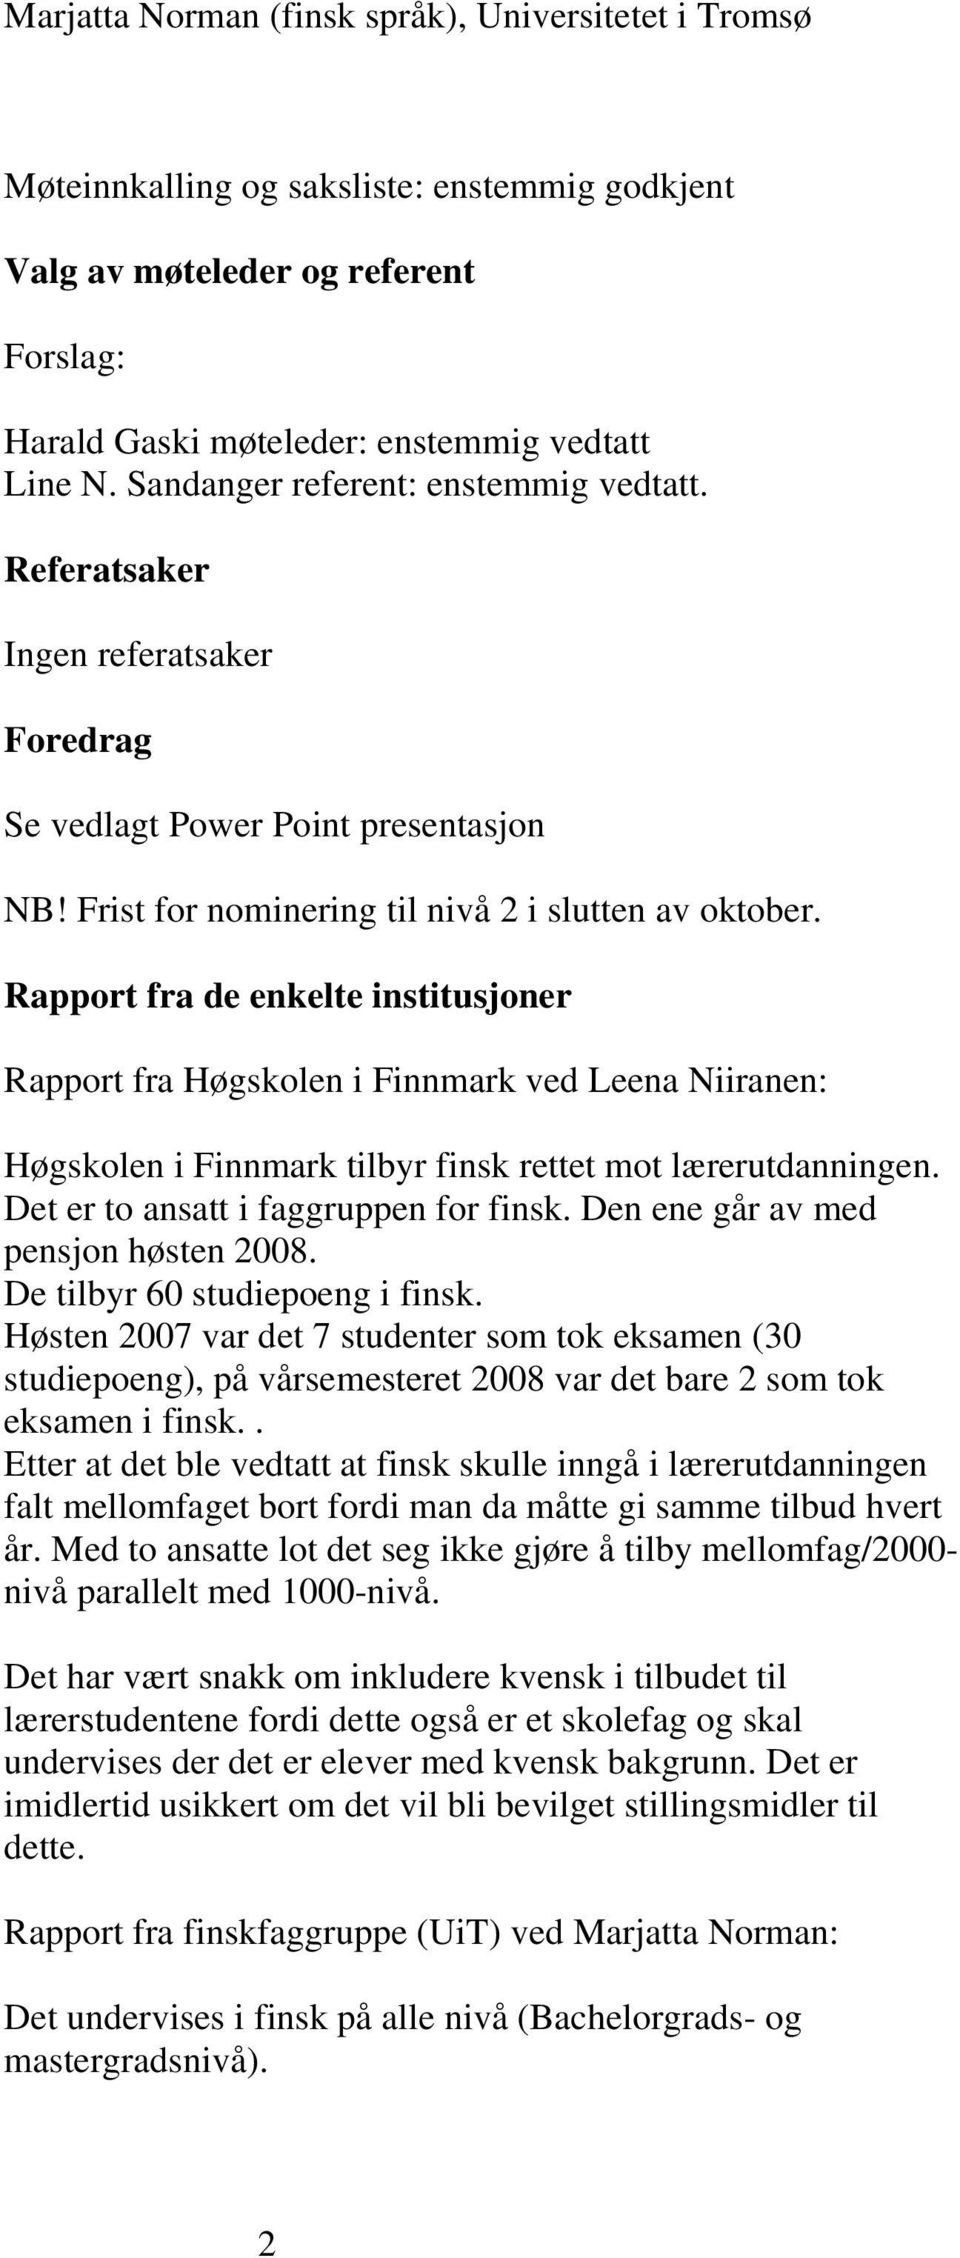 Rapport fra de enkelte institusjoner Rapport fra Høgskolen i Finnmark ved Leena Niiranen: Høgskolen i Finnmark tilbyr finsk rettet mot lærerutdanningen. Det er to ansatt i faggruppen for finsk.